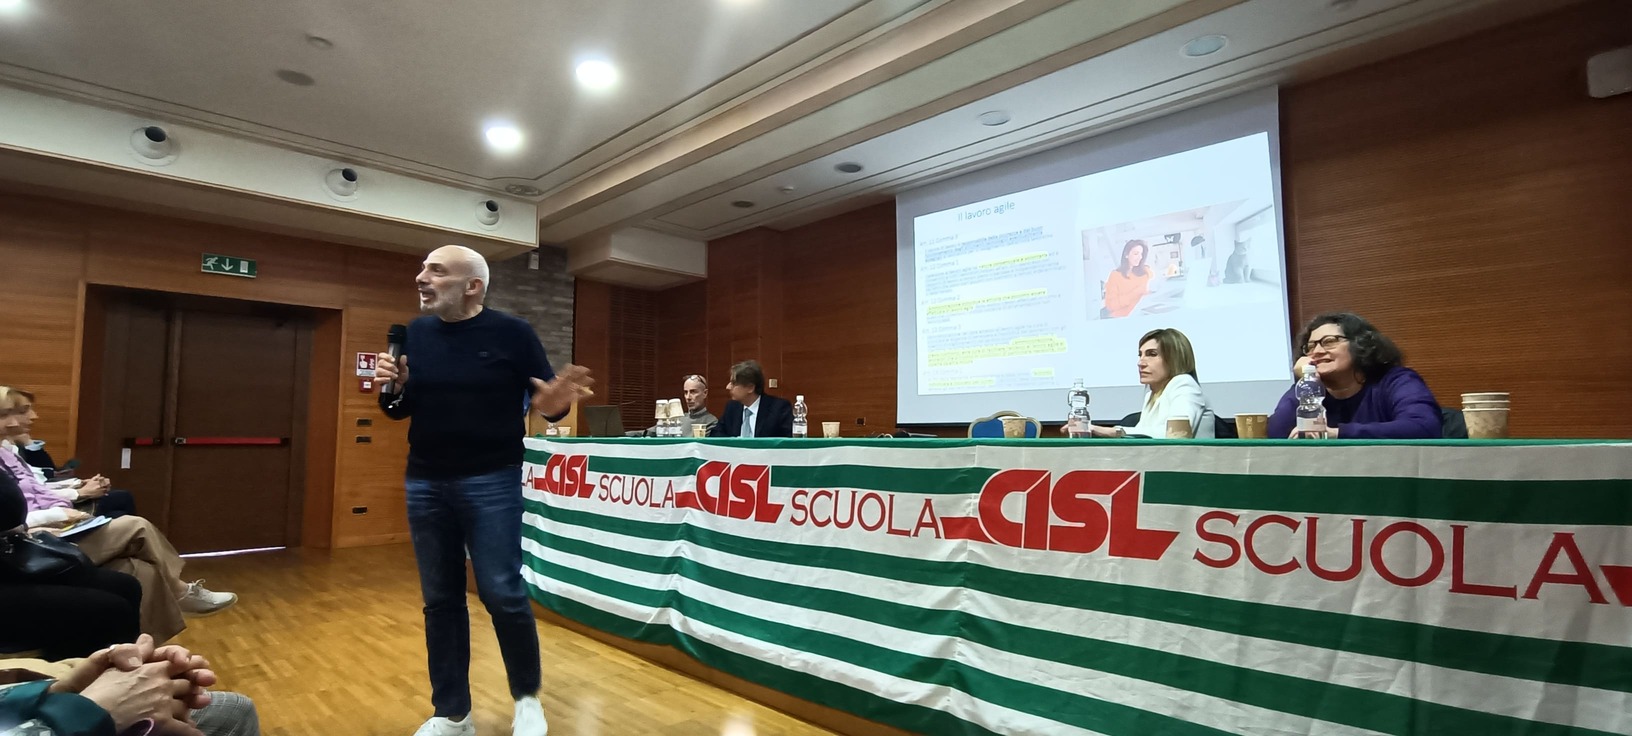 Formazione RSU CISL Scuola Bergamo